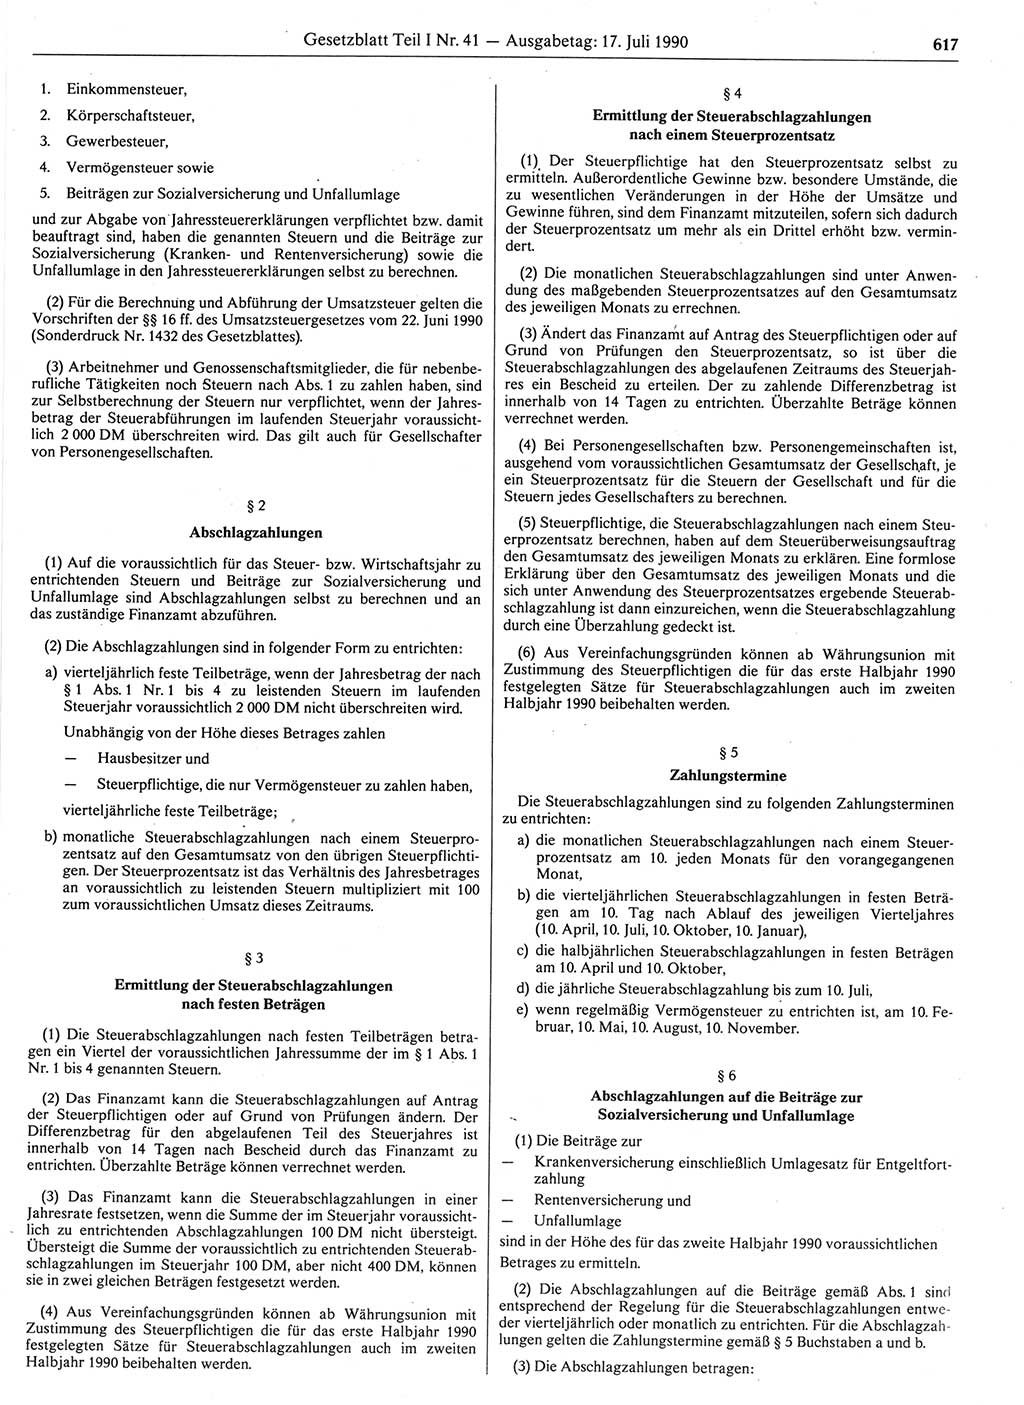 Gesetzblatt (GBl.) der Deutschen Demokratischen Republik (DDR) Teil Ⅰ 1990, Seite 617 (GBl. DDR Ⅰ 1990, S. 617)